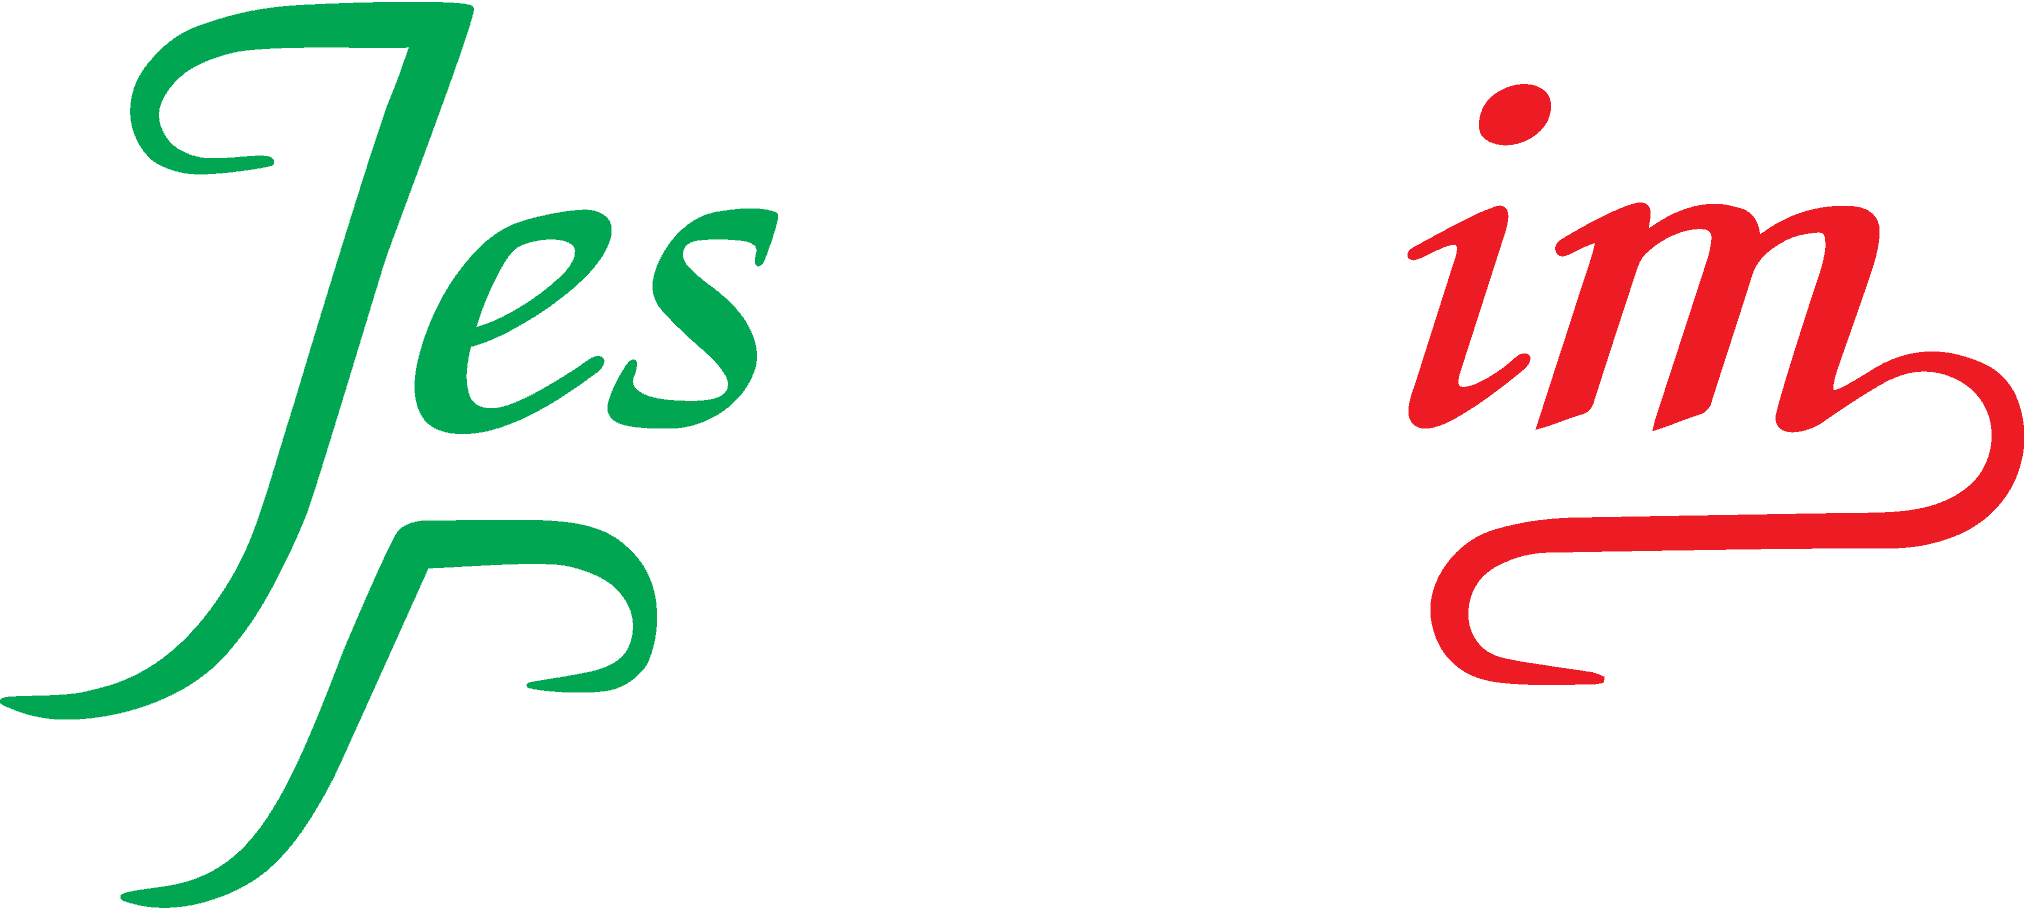 Jessheim Pizzeria